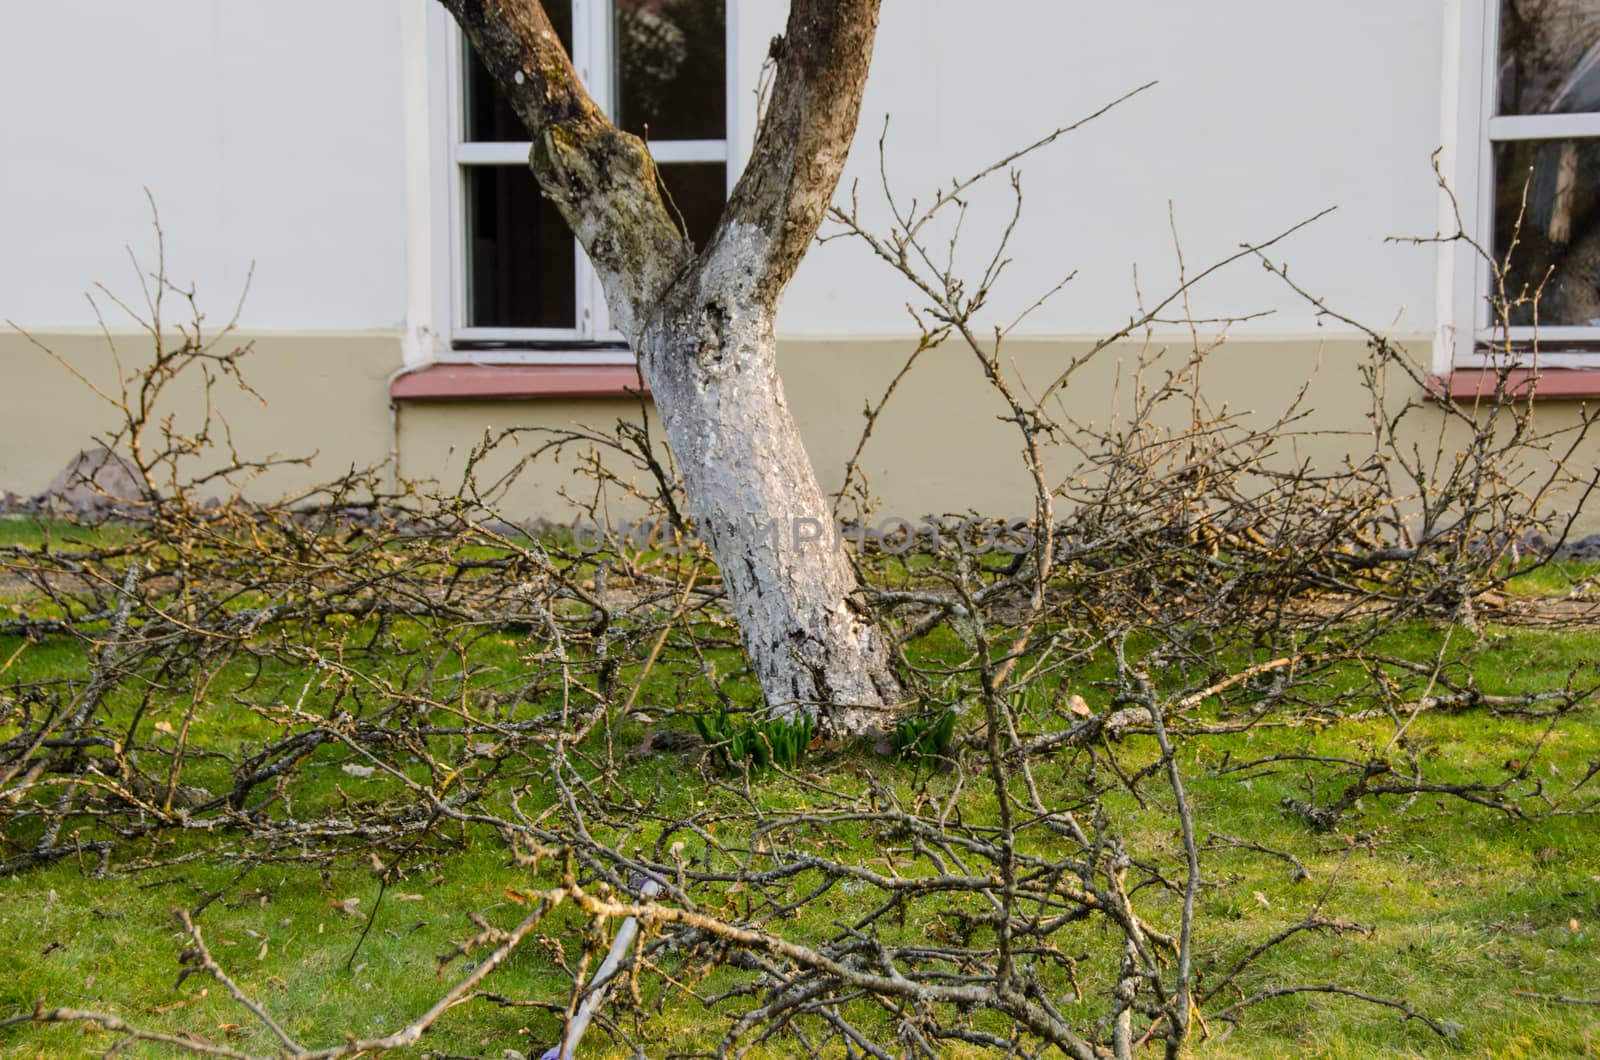 cut branches lie next to tree, garden spring work by sauletas